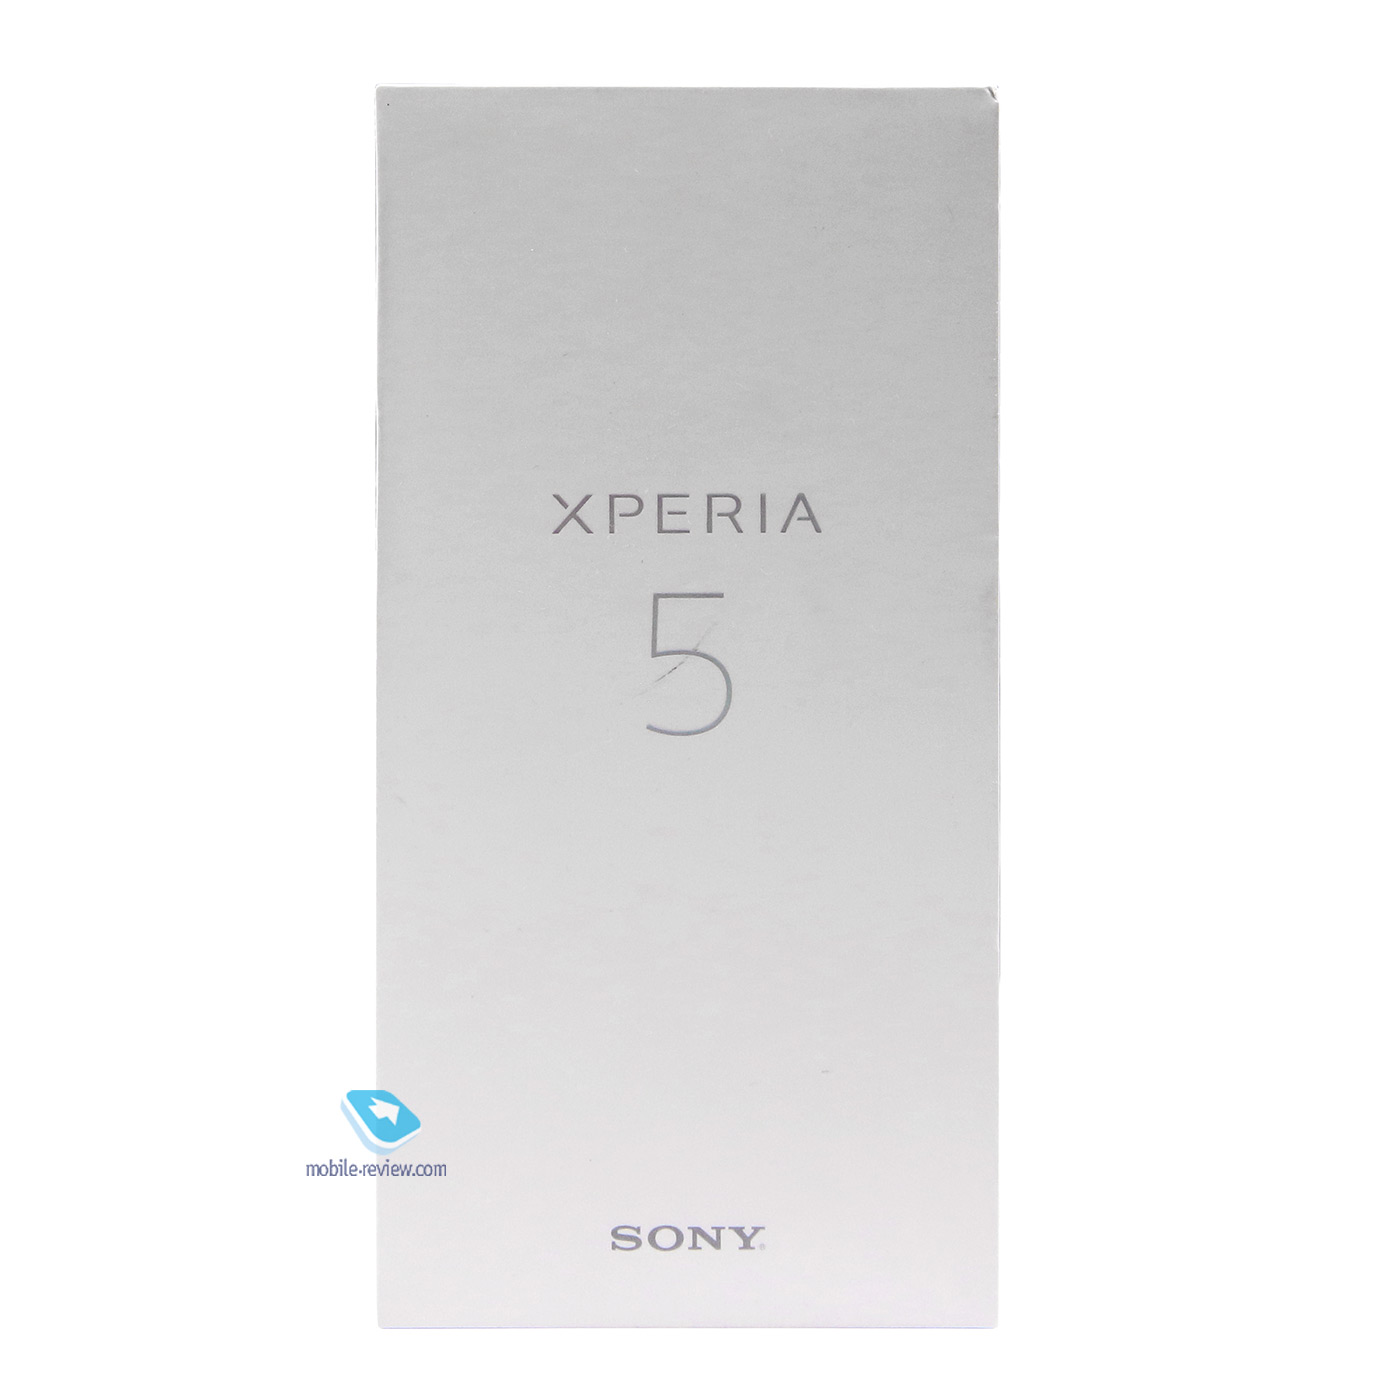 Обзор смартфона Sony Xperia 5 (J9210)